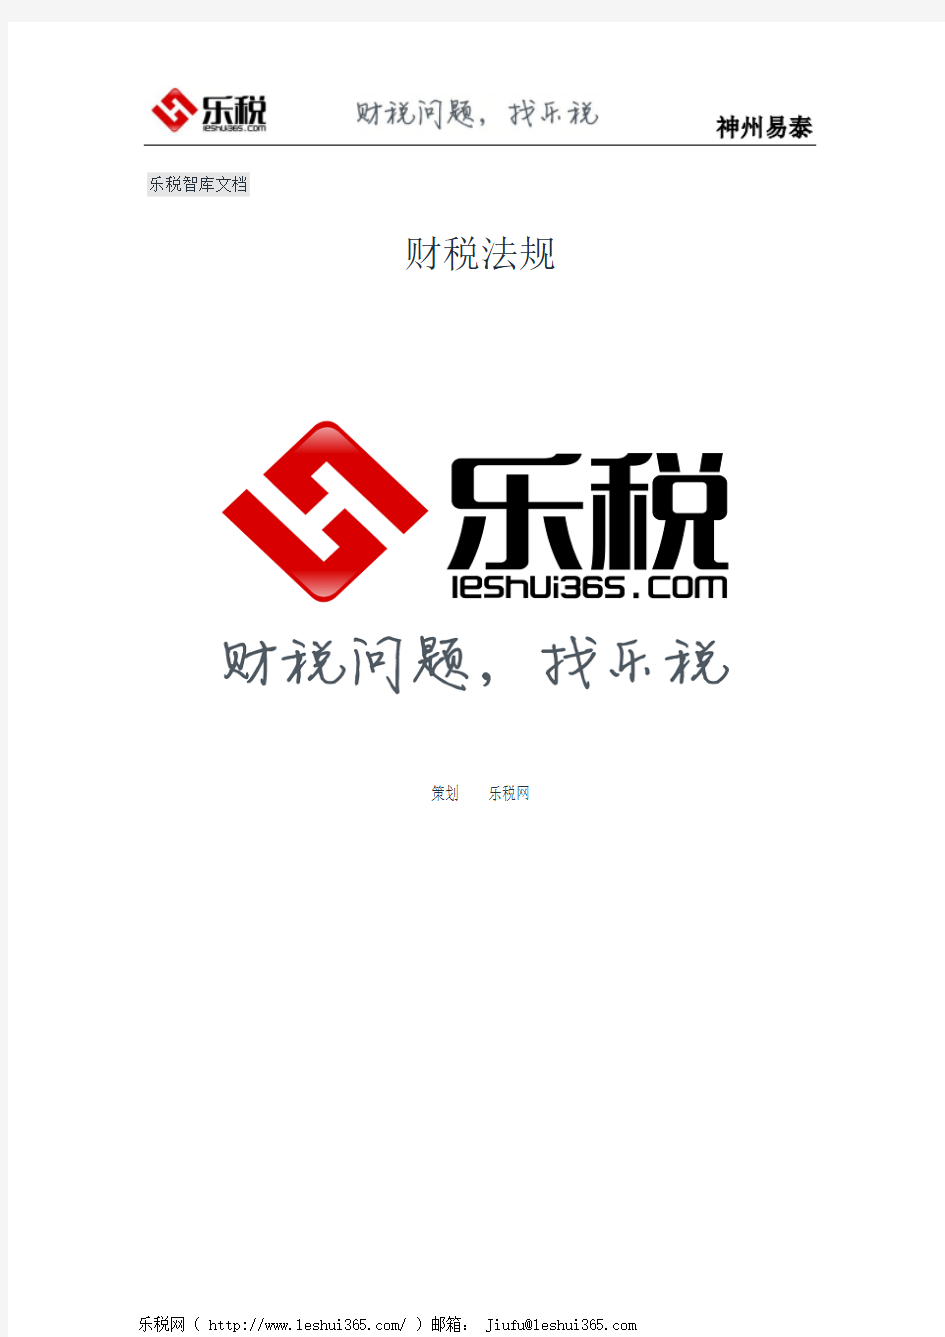 北京市地方税务局关于个人所得税完税证明用章问题的通知